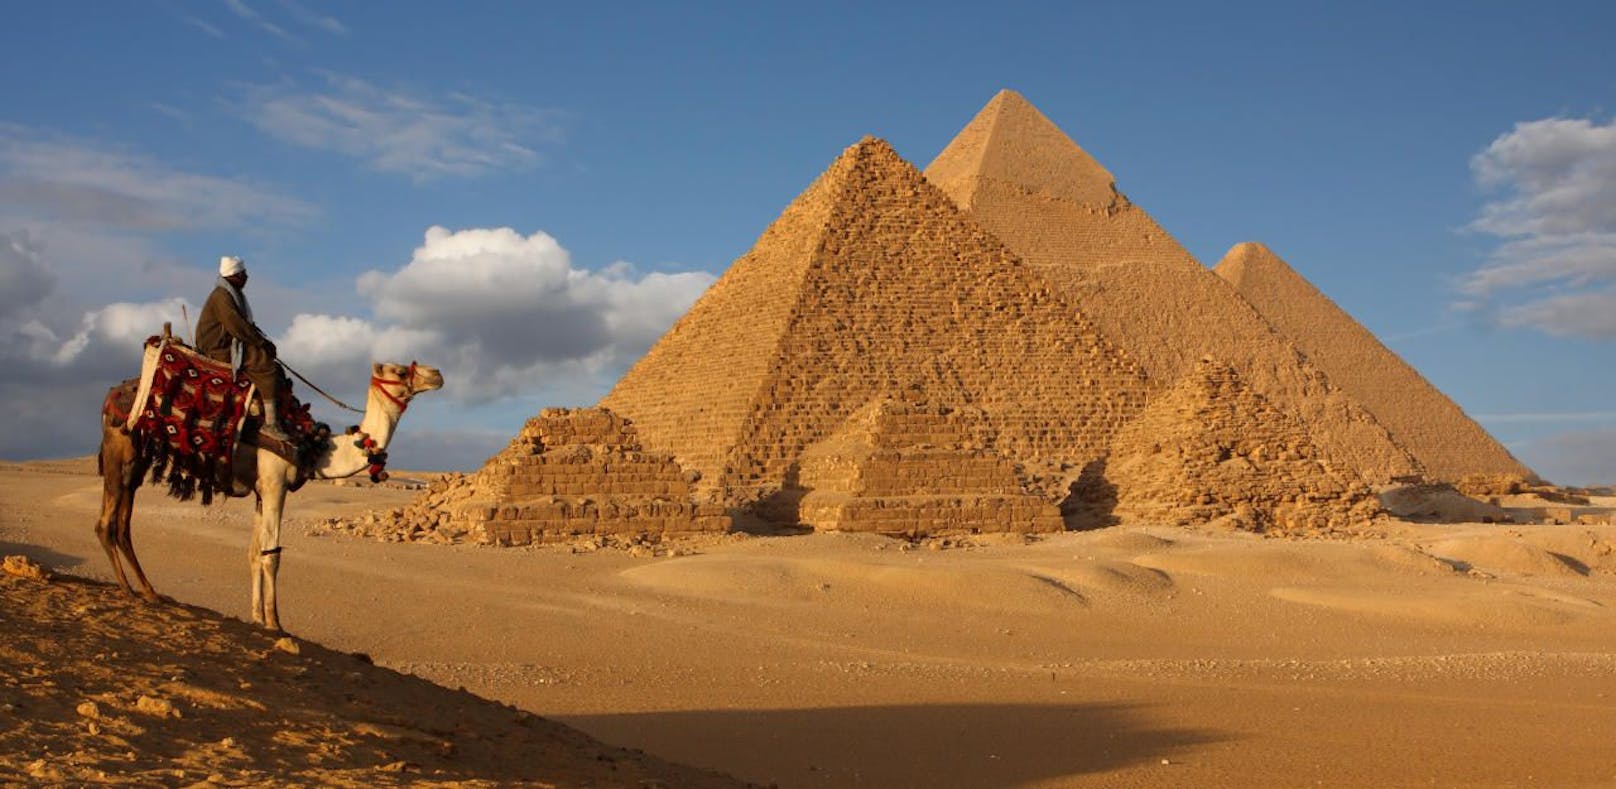 Nach Attacke auf Touristen: Wie sicher ist Urlaub in Ägypten?